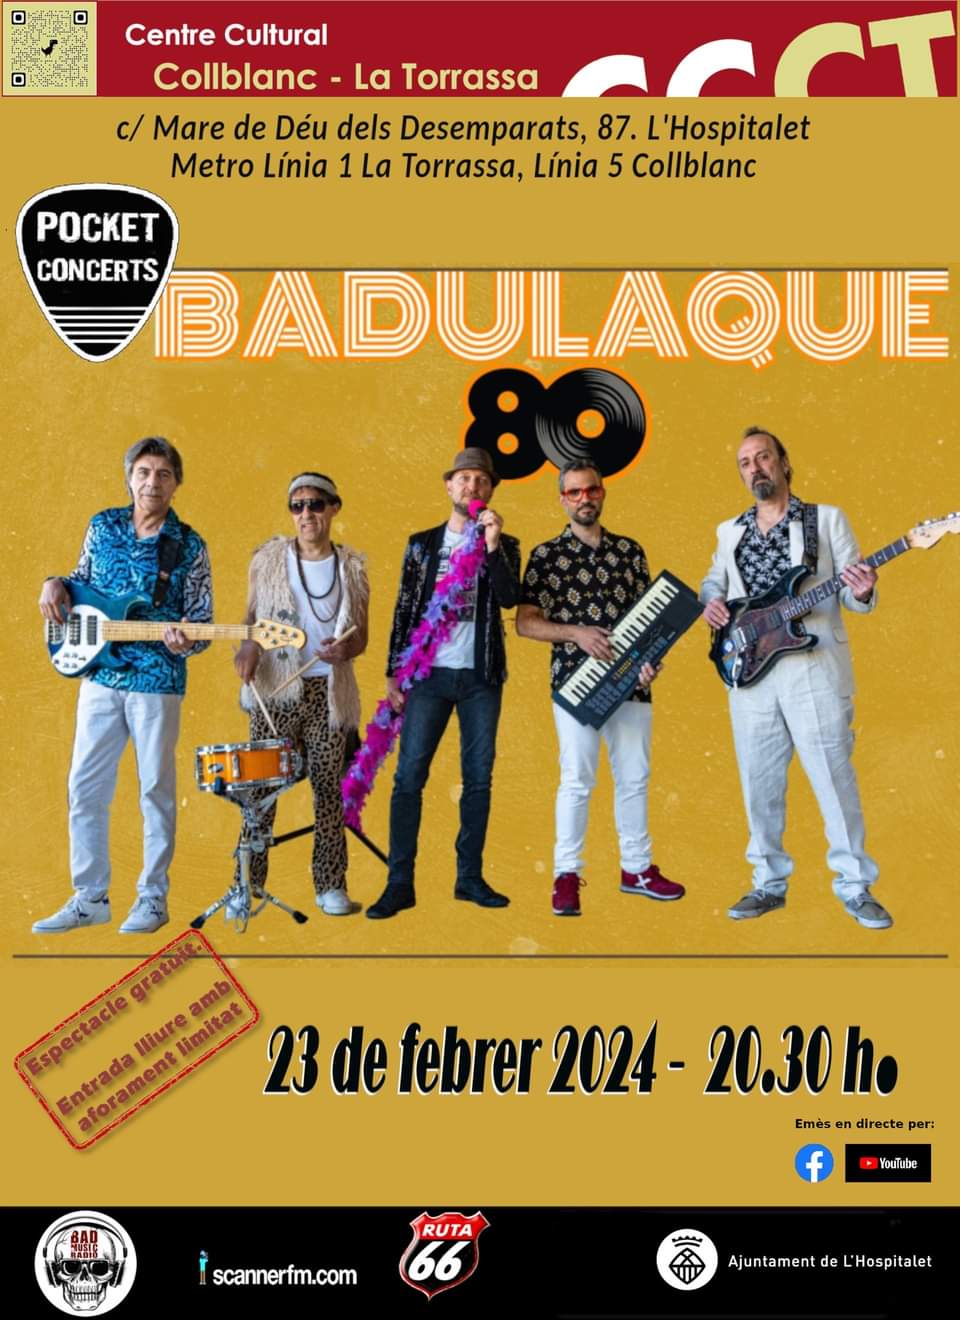 Concert de Badulaque80 a L'Hospitalet de Llobregat - concert a L'Hospitalet de Llobregat- concerts catalunya - agenda cap de setmana - que fer aquest cap de setmana - que fer avui